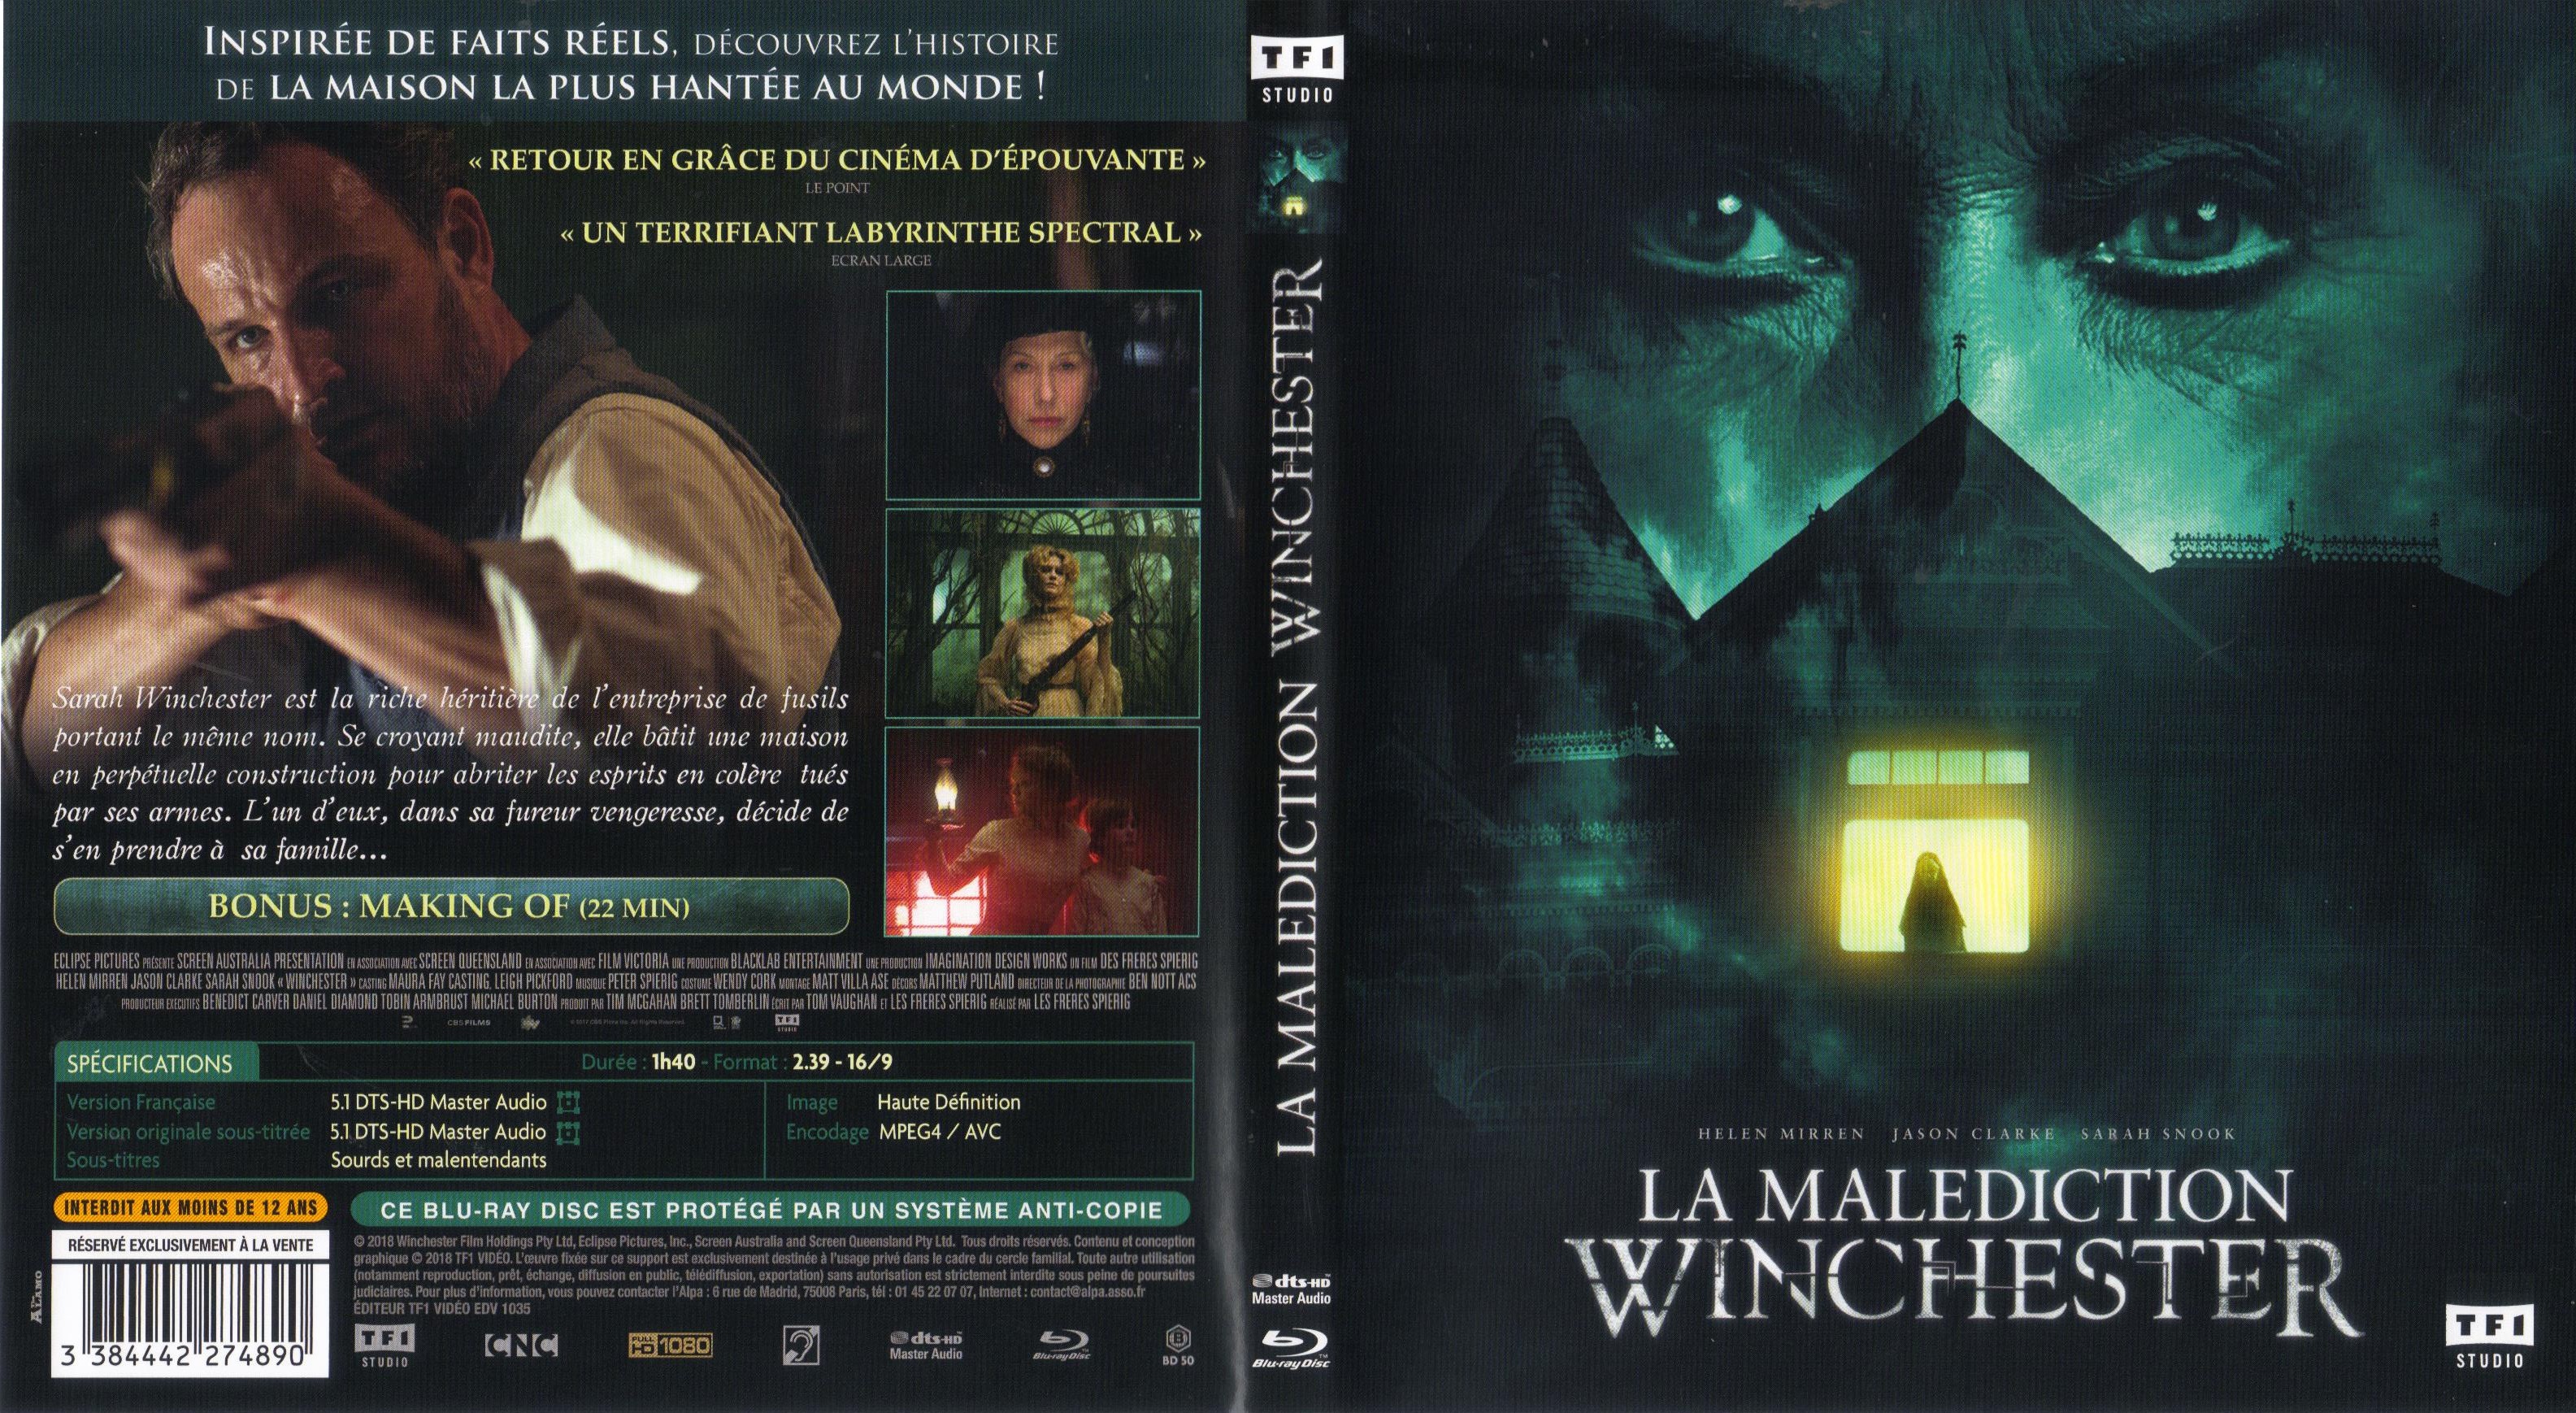 Jaquette DVD La Maldiction Winchester (BLIU-RAY)